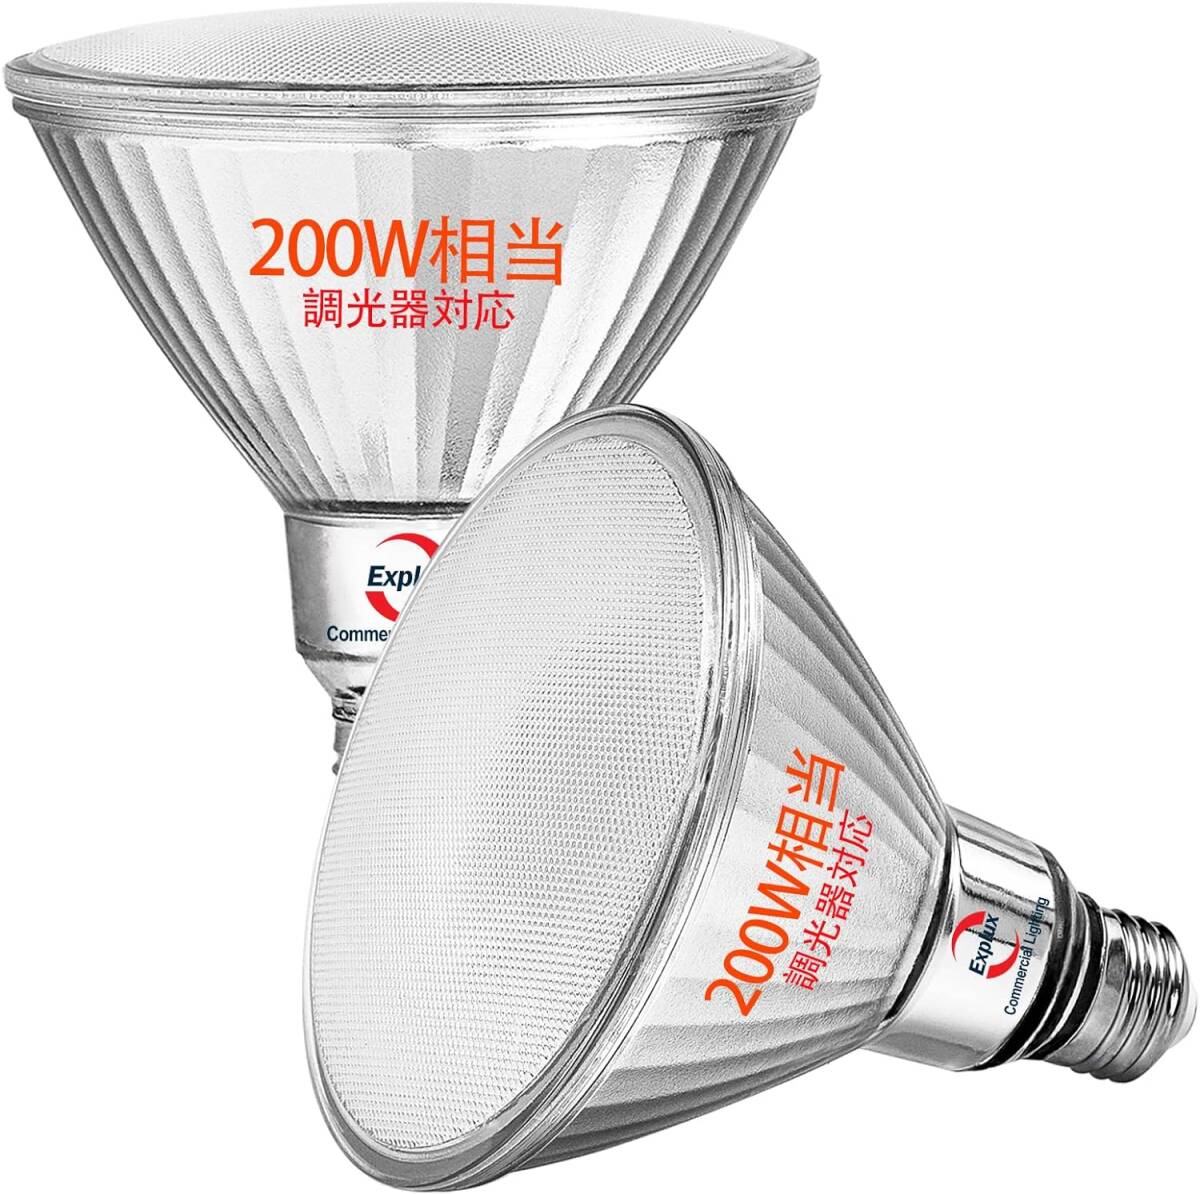 超高輝度LEDハイビーム電球 200W形相当 2600lm 電球色 調光対応 E26口金 ガラスボディ 屋外防水防劣化 PAR38ビームランプ 2個入_画像1